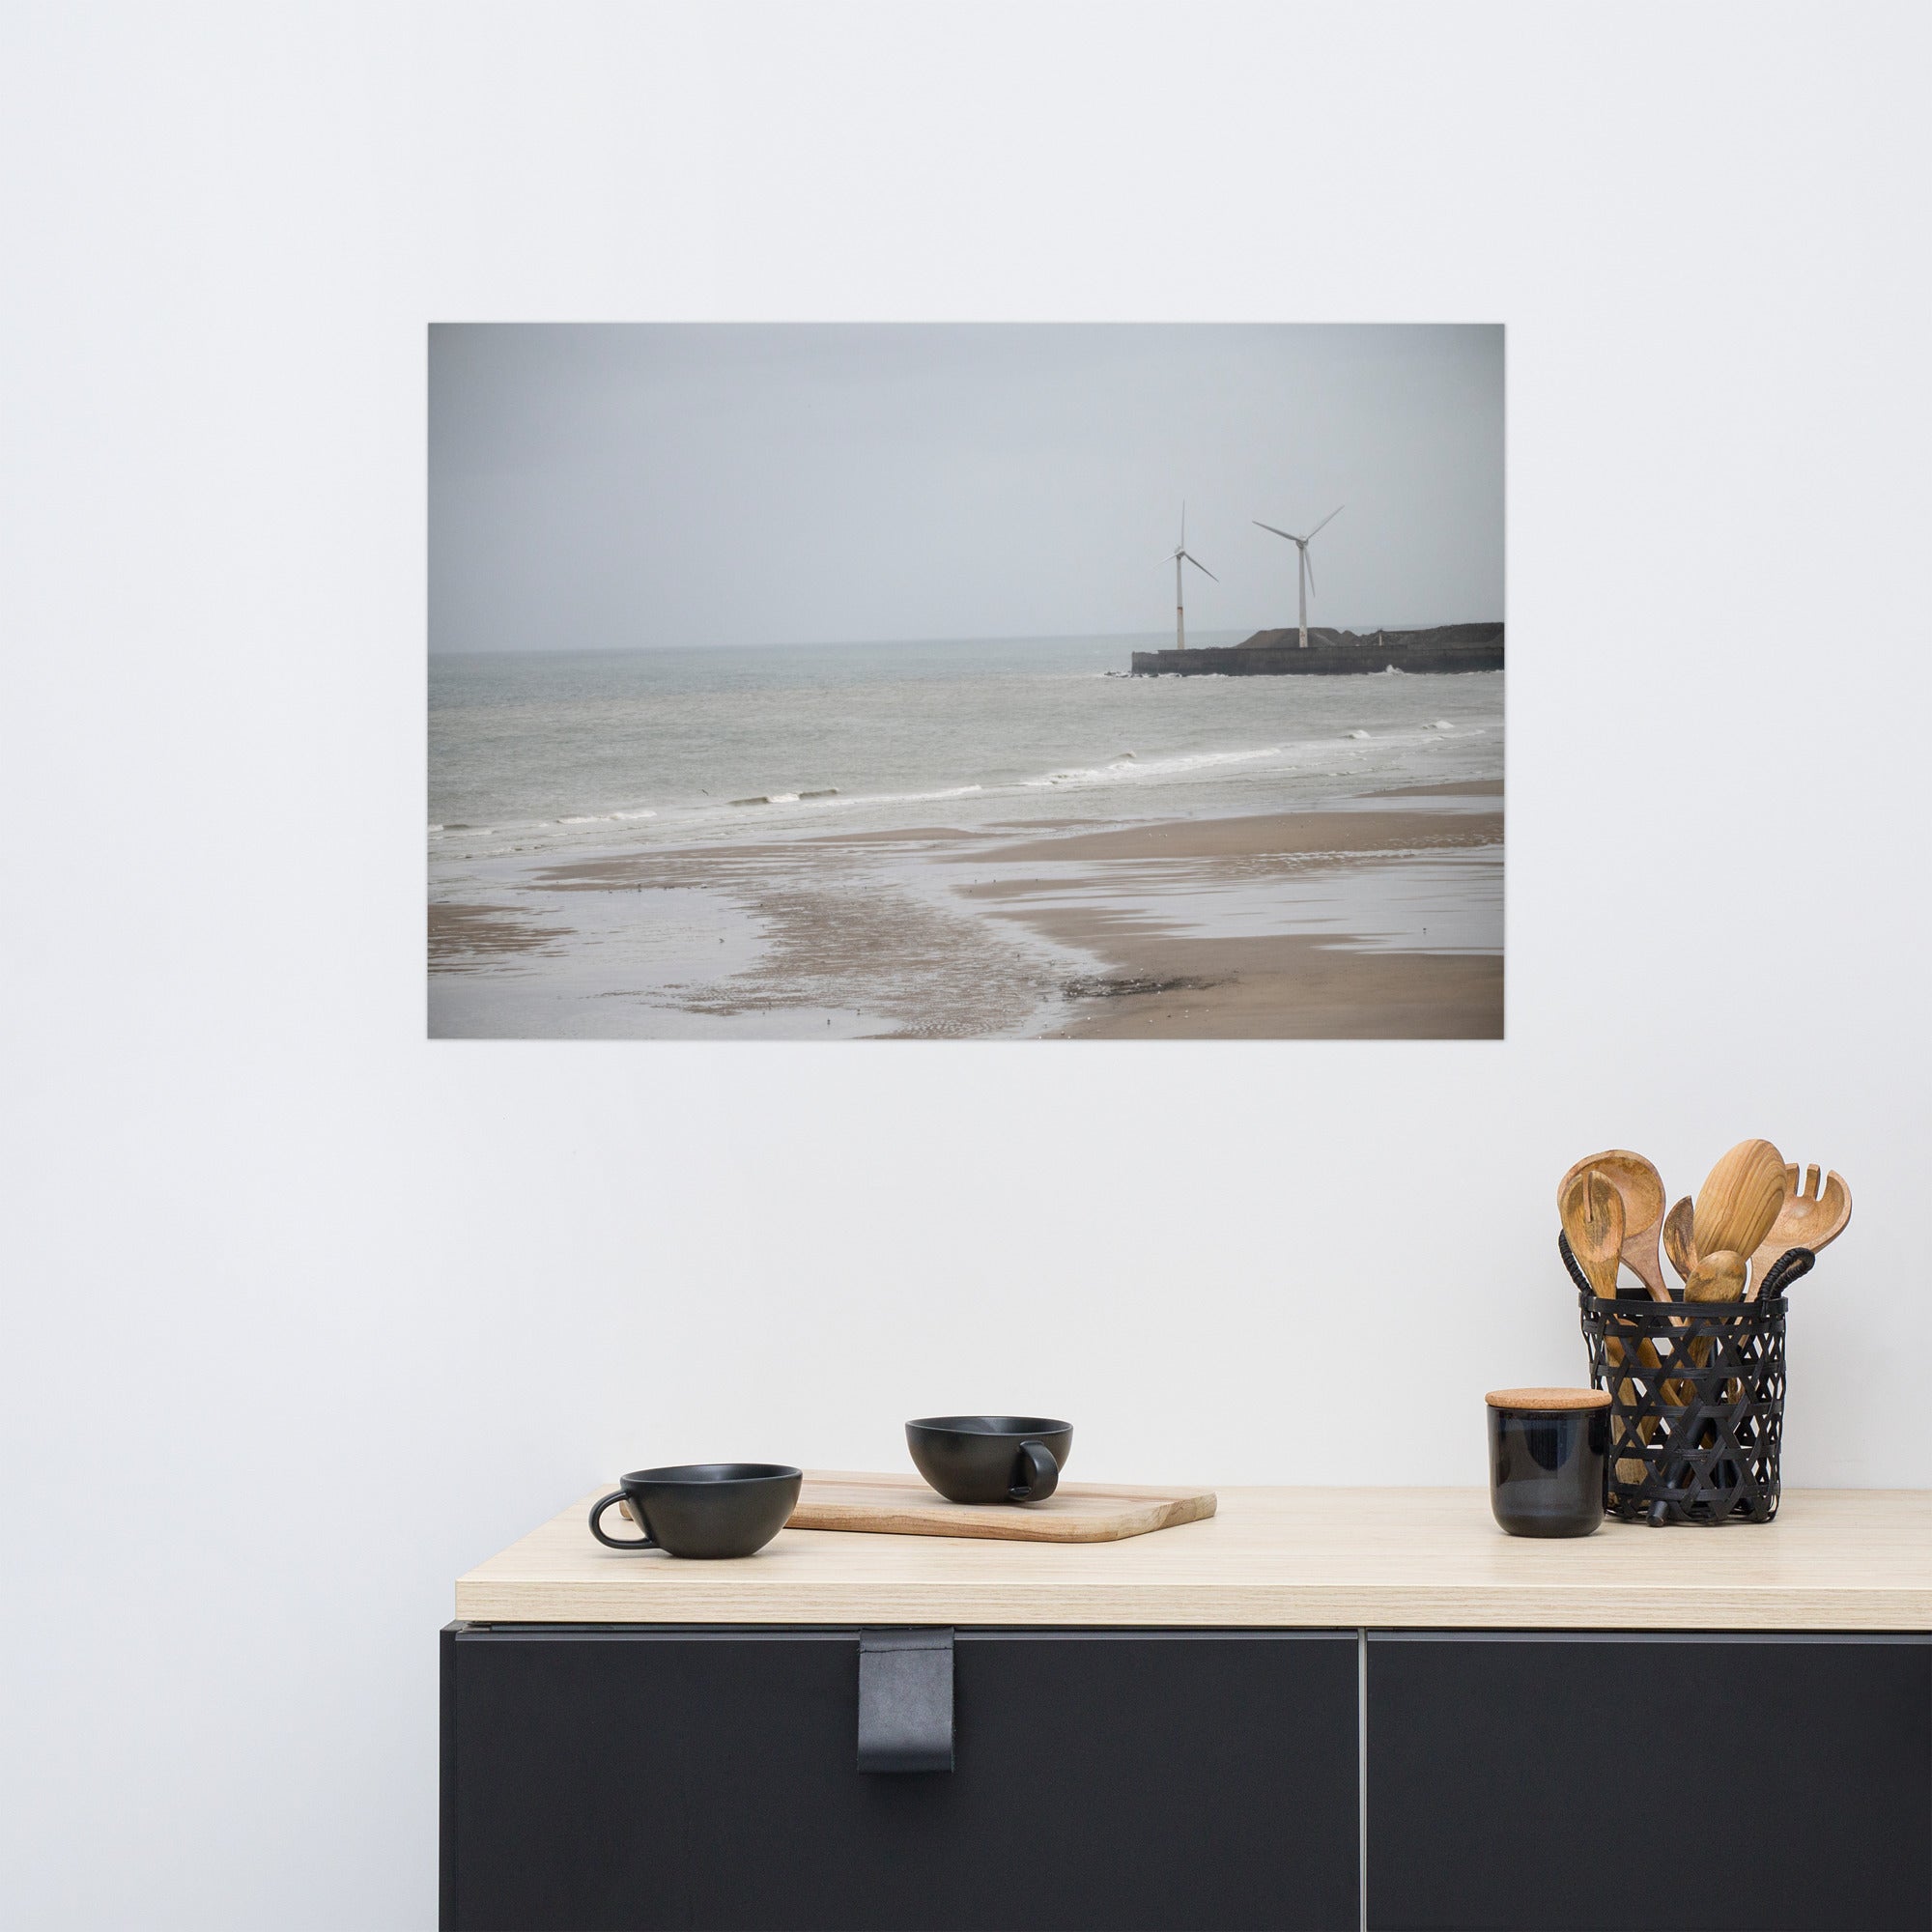 Poster d'une plage brumeuse avec mouettes et éoliennes sur la côte nord de la France